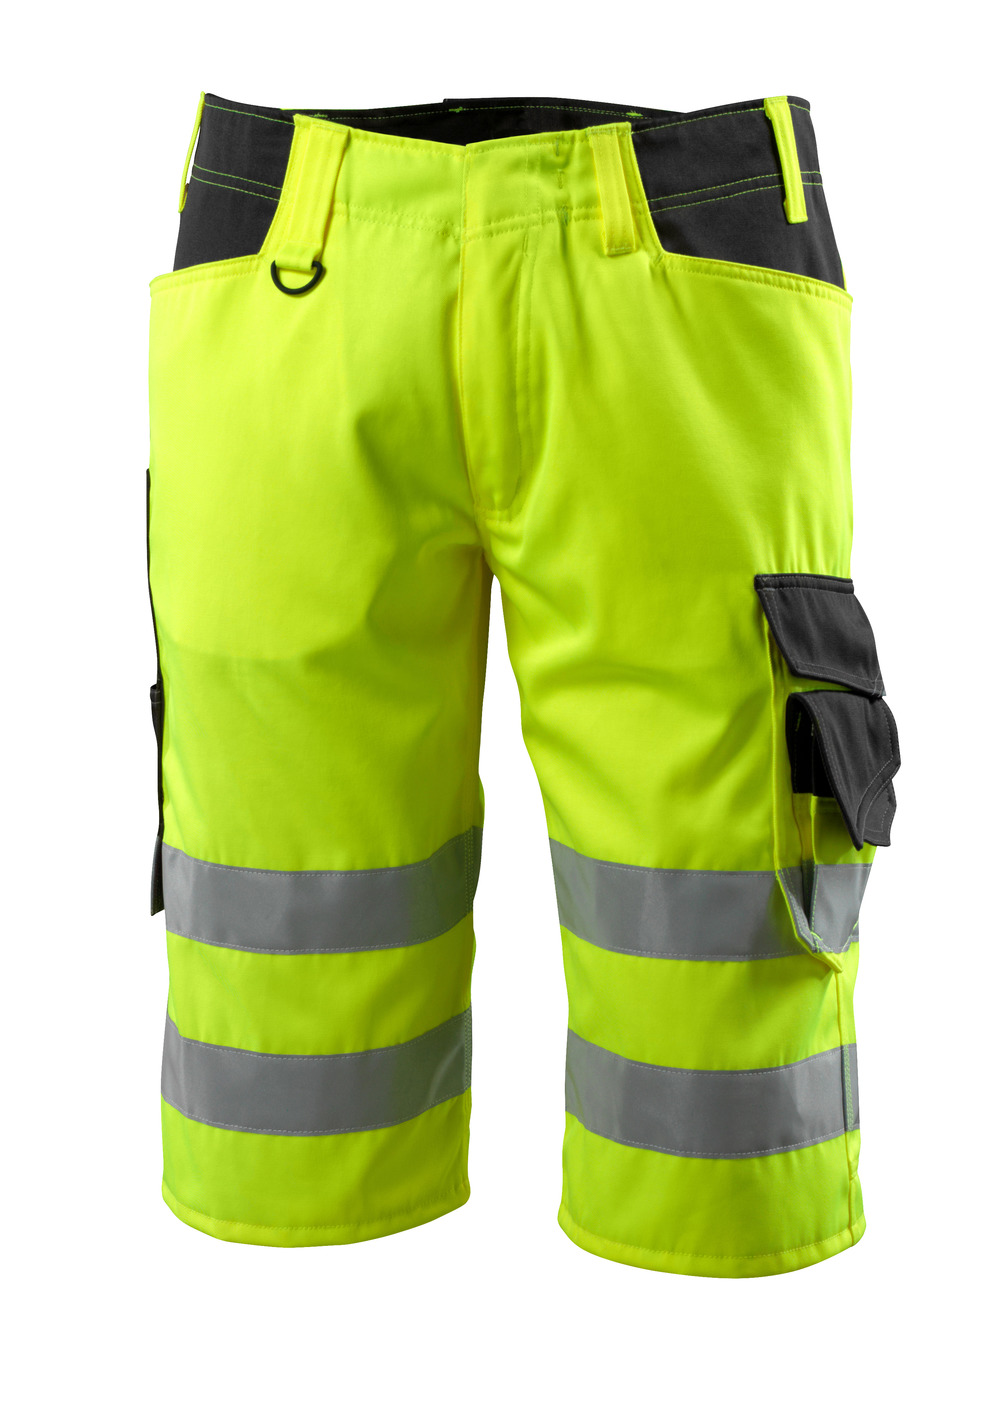 MASCOT-Warnschutz, Warn-Shorts, Luton,  290 g/m², gelb/schwarz

